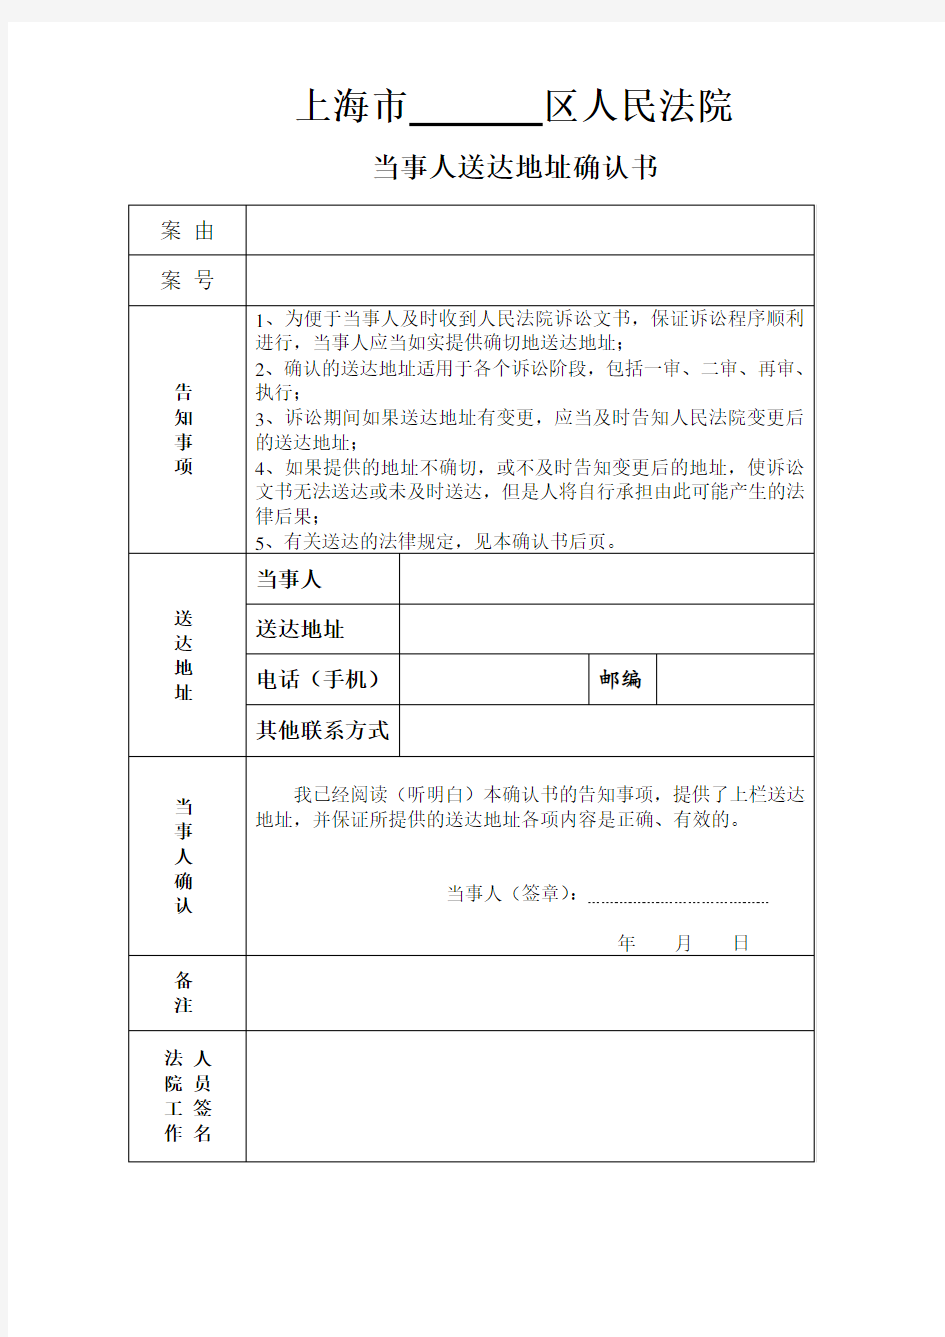 上海法院送达地址确认书